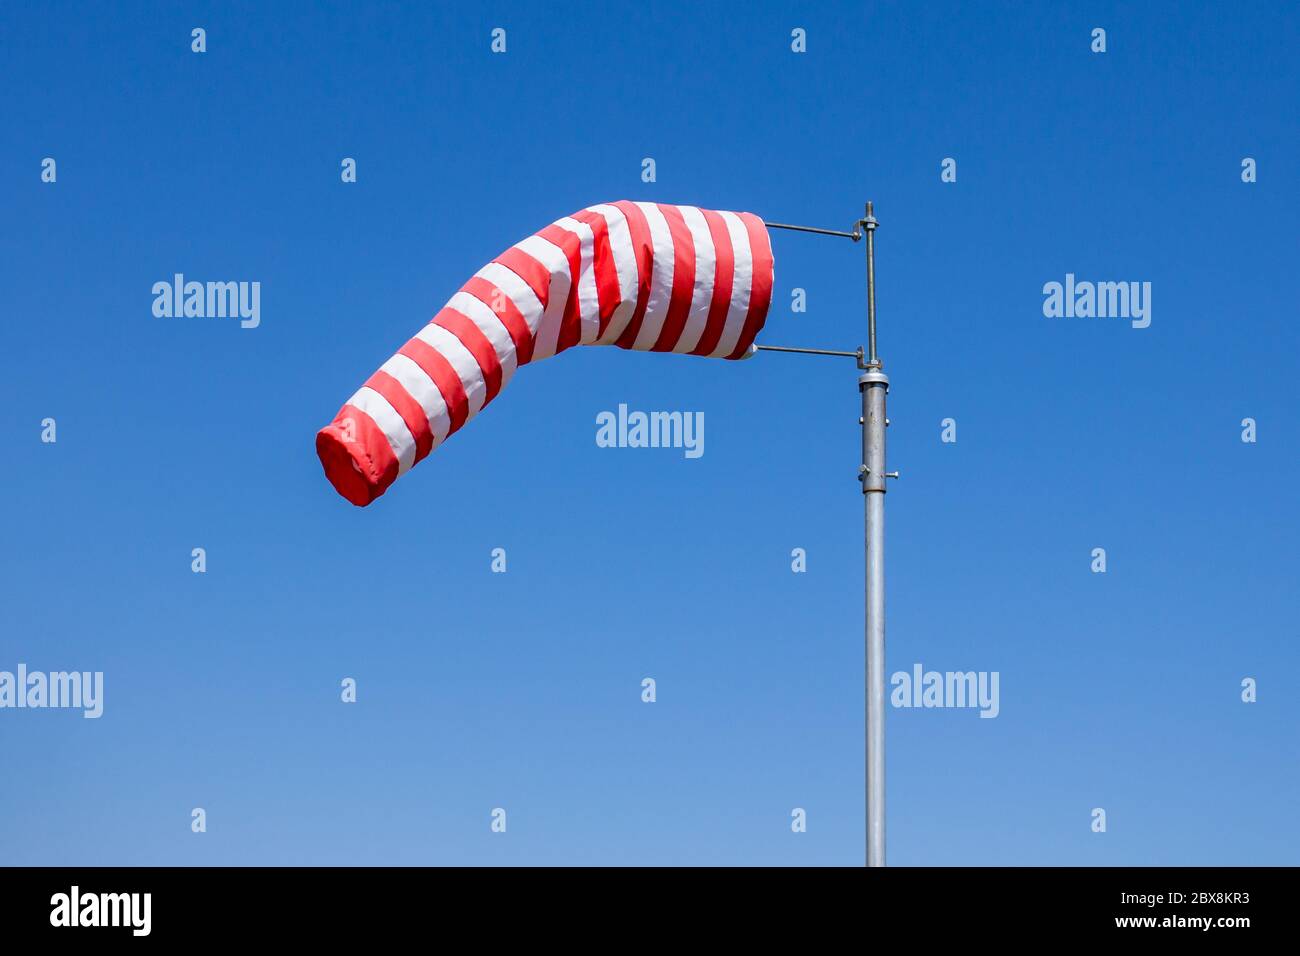 Drapeau de la protection contre le vent, indicateur de vitesse du vent, bandes rouges et blanches sur fond bleu Banque D'Images